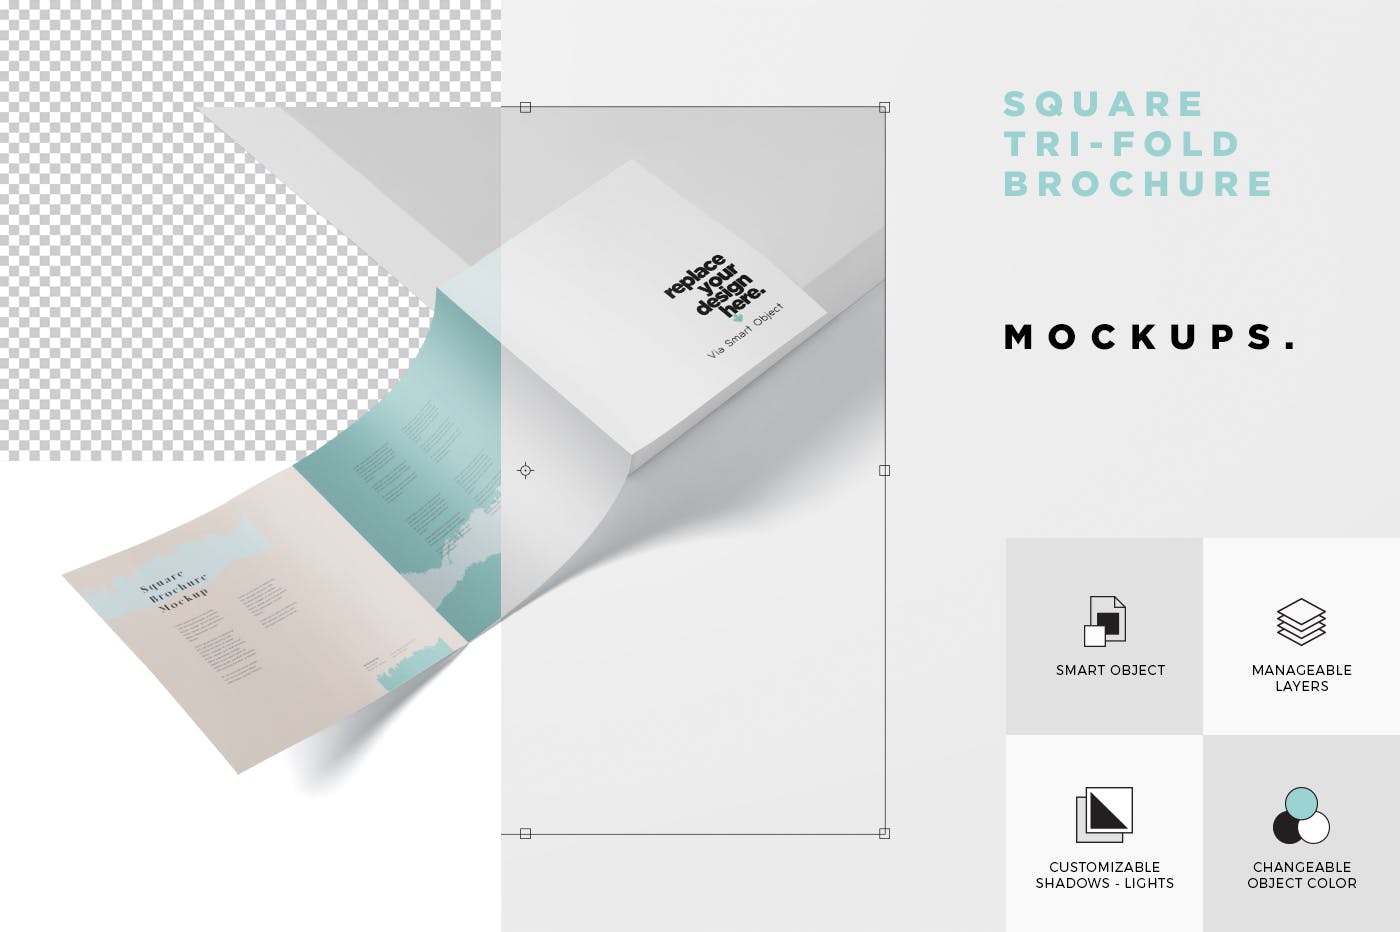 方形三折页宣传册传单印刷效果图样机第一素材精选 Tri-Fold Brochure Mock-Up – Square插图(5)